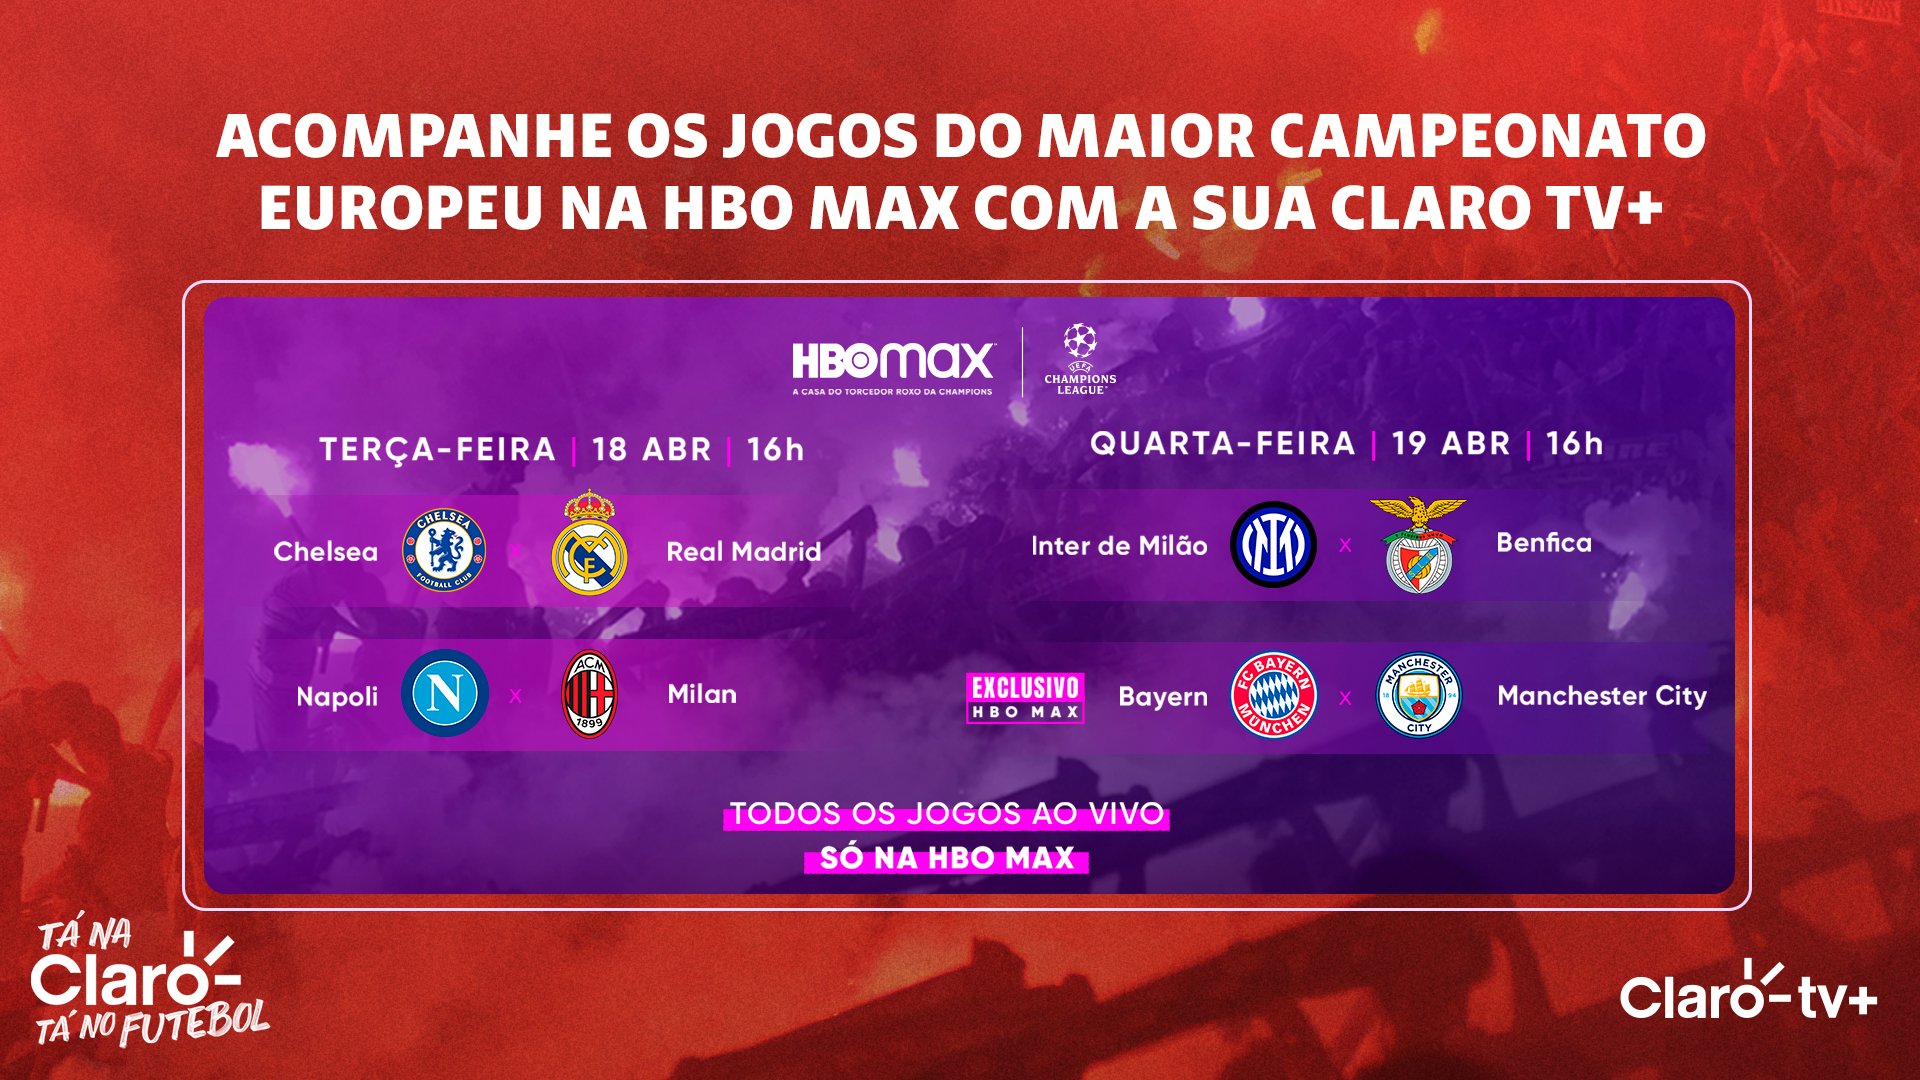 Claro Brasil on X: É acompanhar os jogos da UEFA Champions League